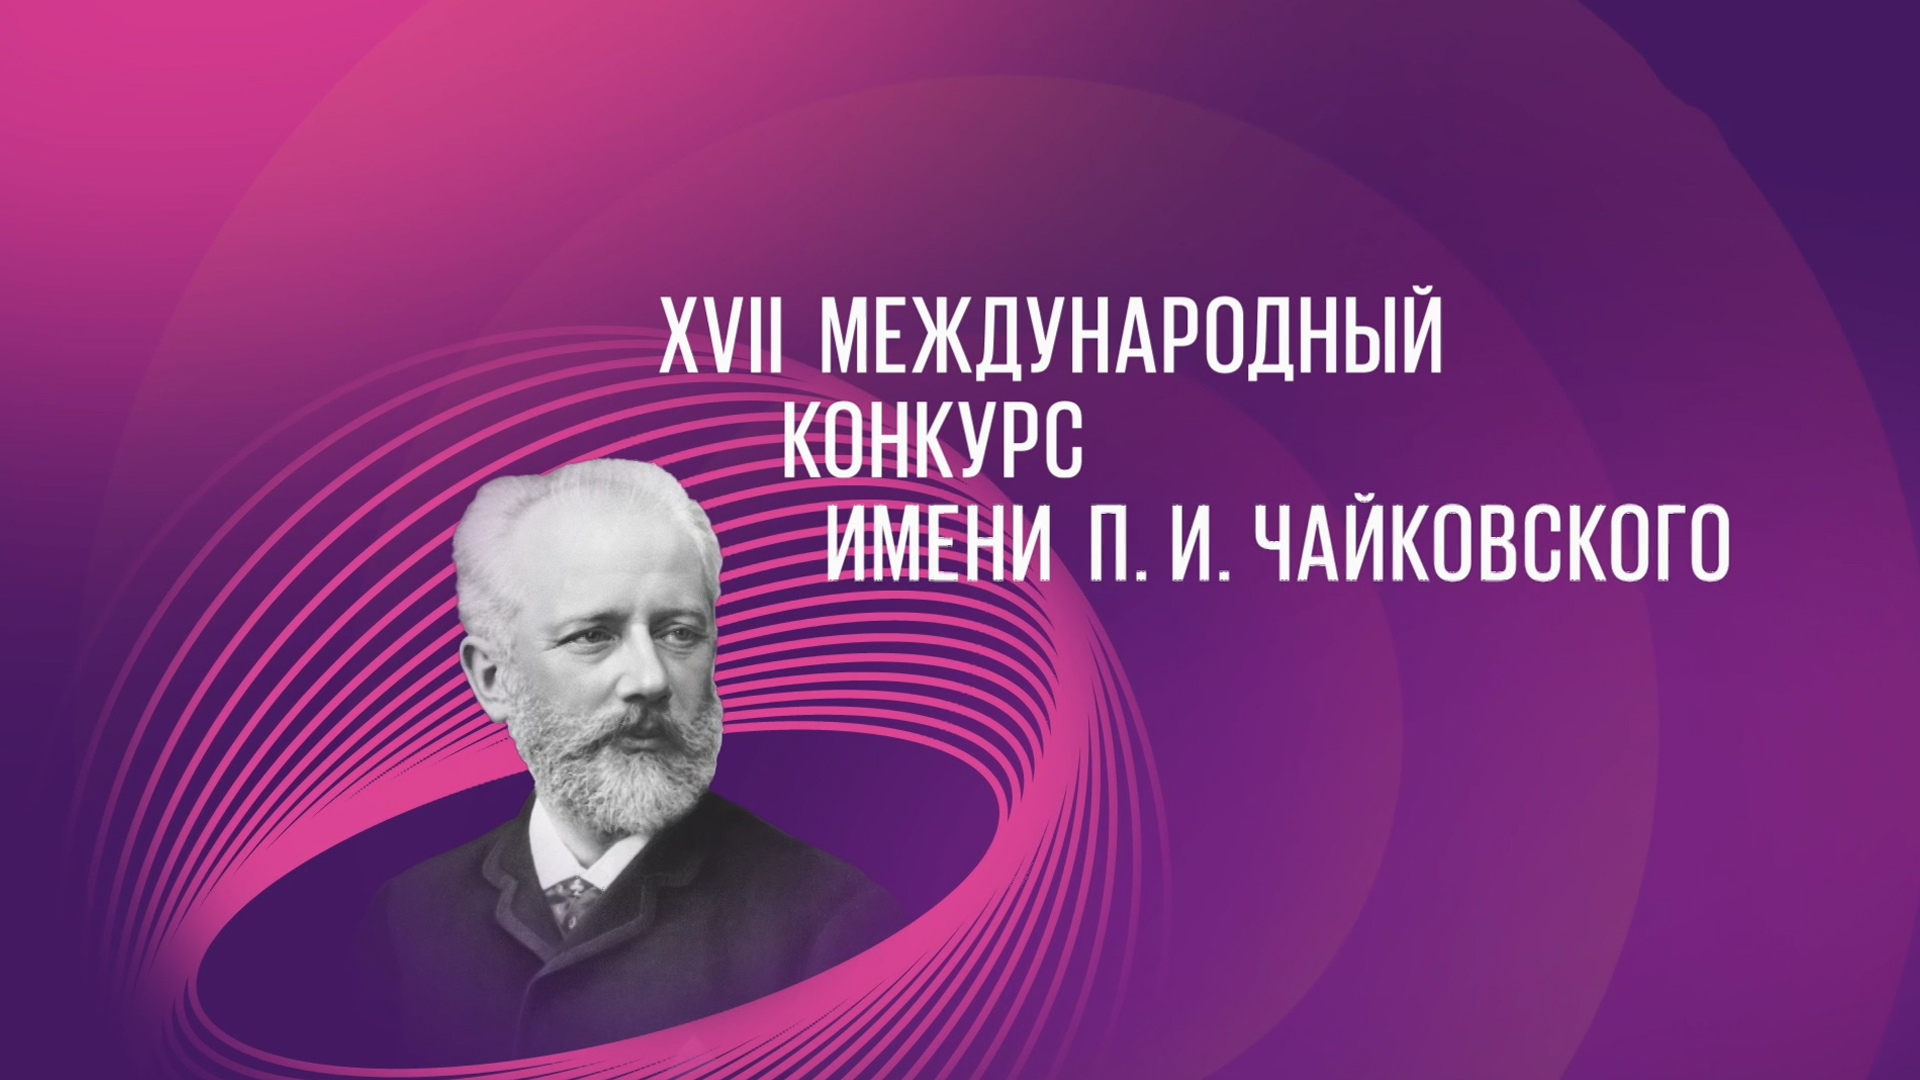 XVII Международный конкурс имени П.И.Чайковского. Победители